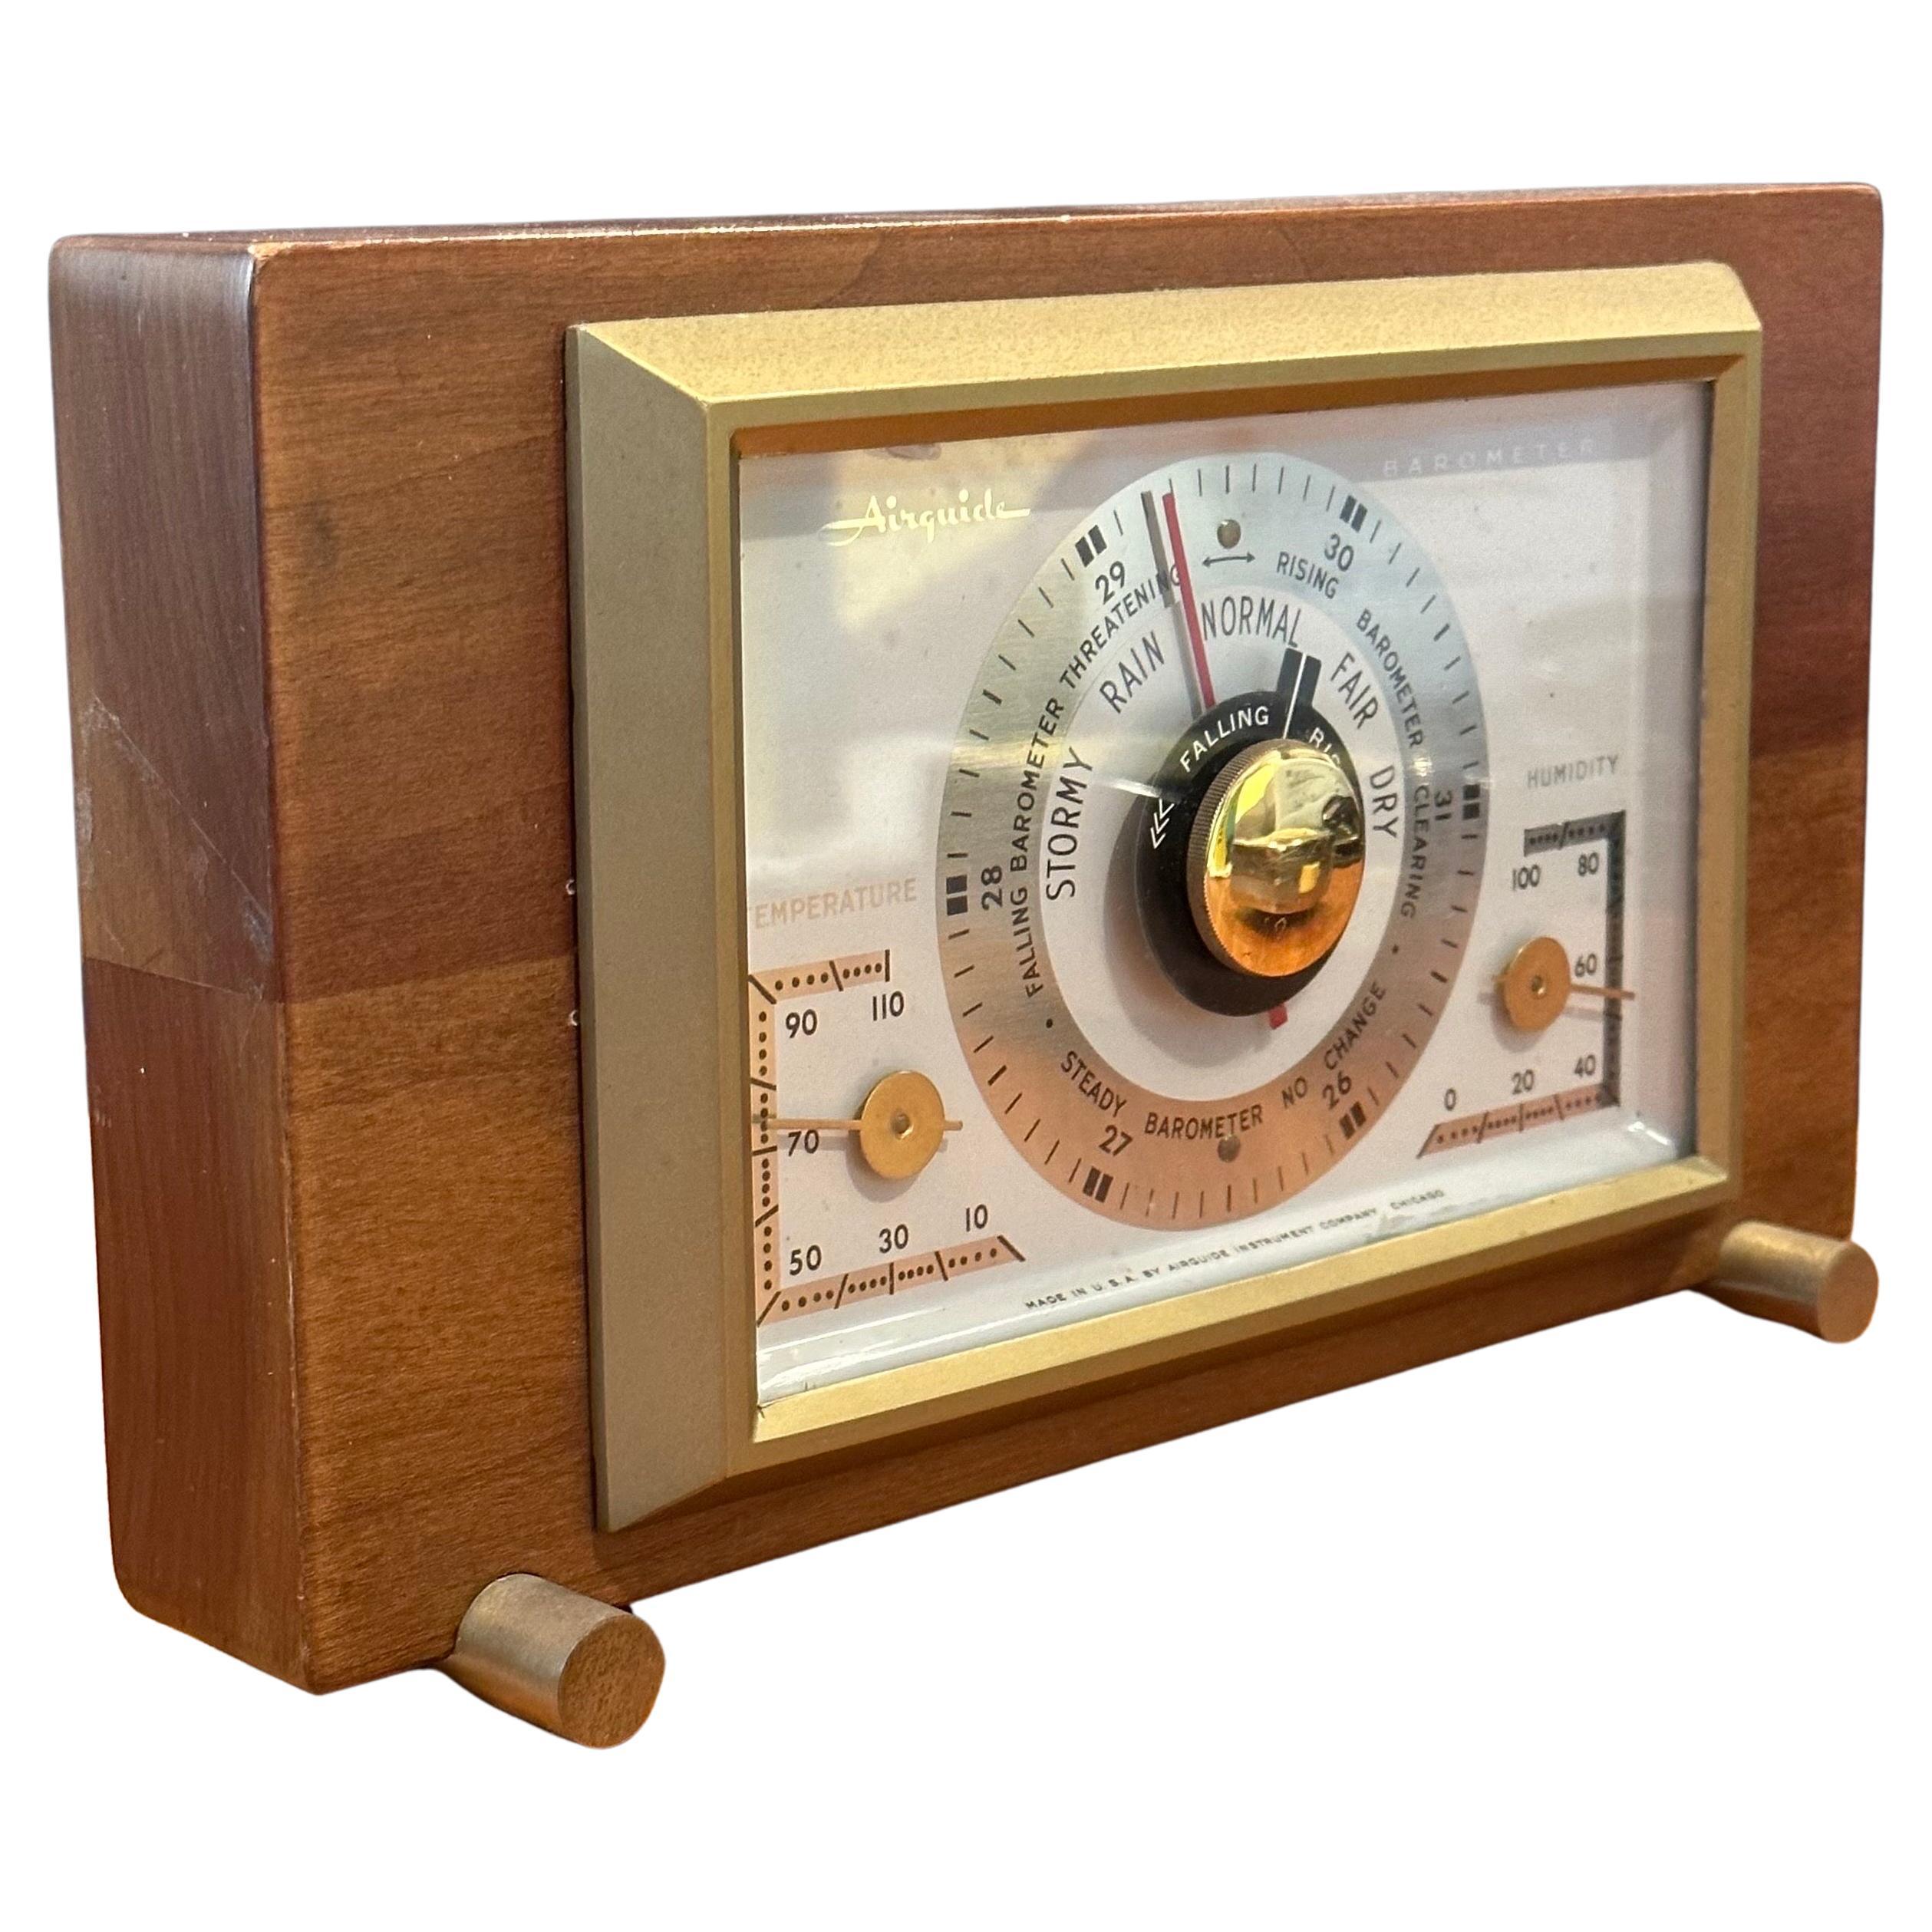 Un baromètre / station météorologique de bureau très cool par AirGuide Instrument Company, vers les années 1950.  L'appareil est présenté dans un coffret en noyer avec des pieds et des accents en laiton.  Il est équipé de jauges et d'instruments